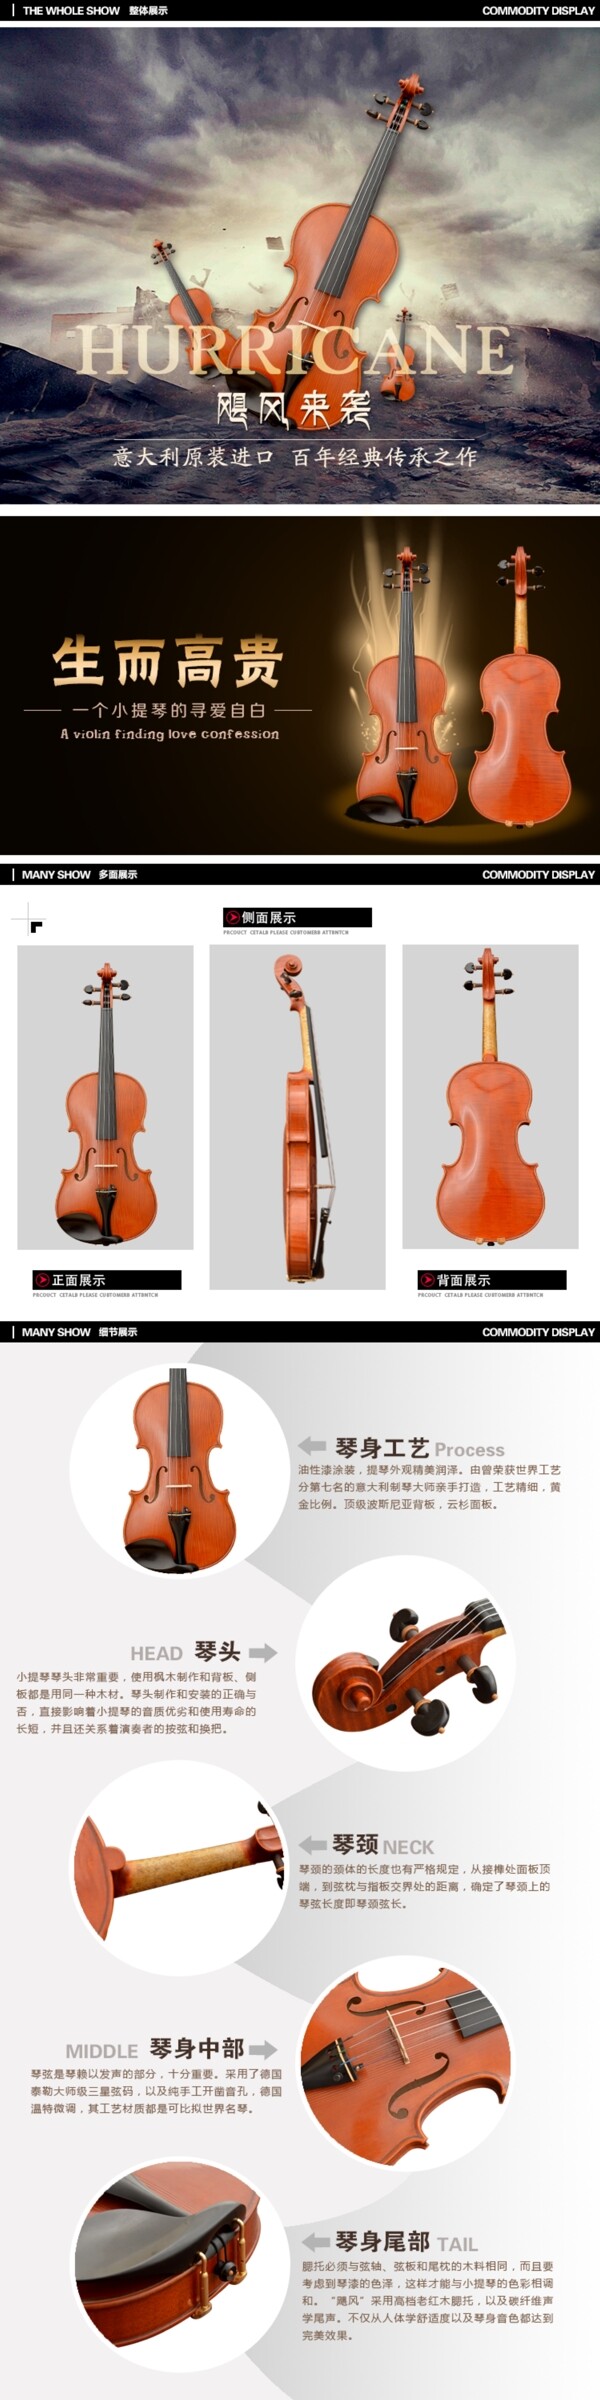 小提琴详情页